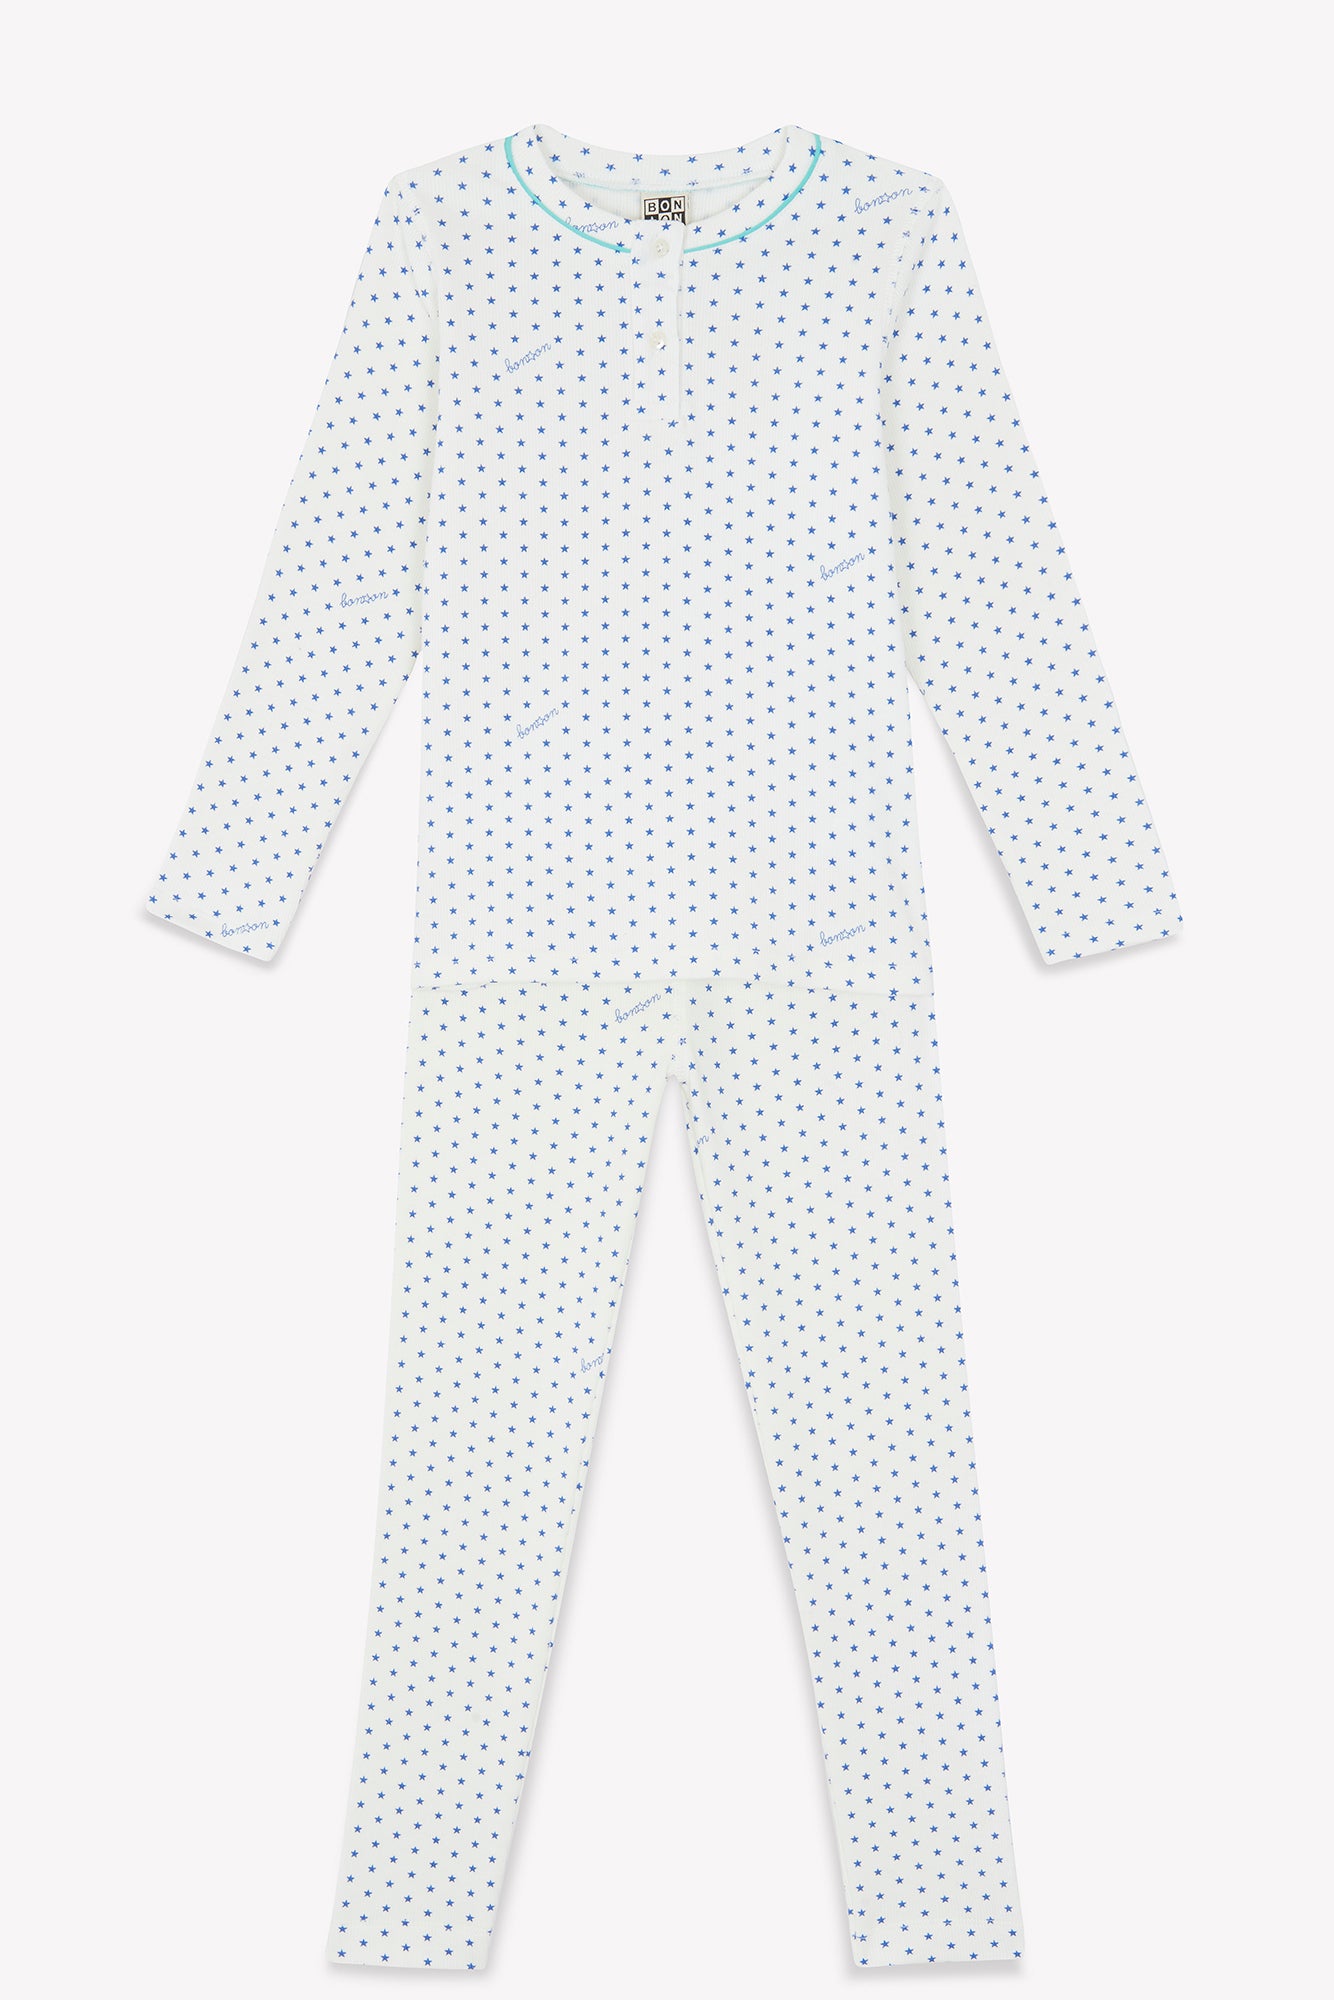 Outfit - Pajamas Blue Print stars